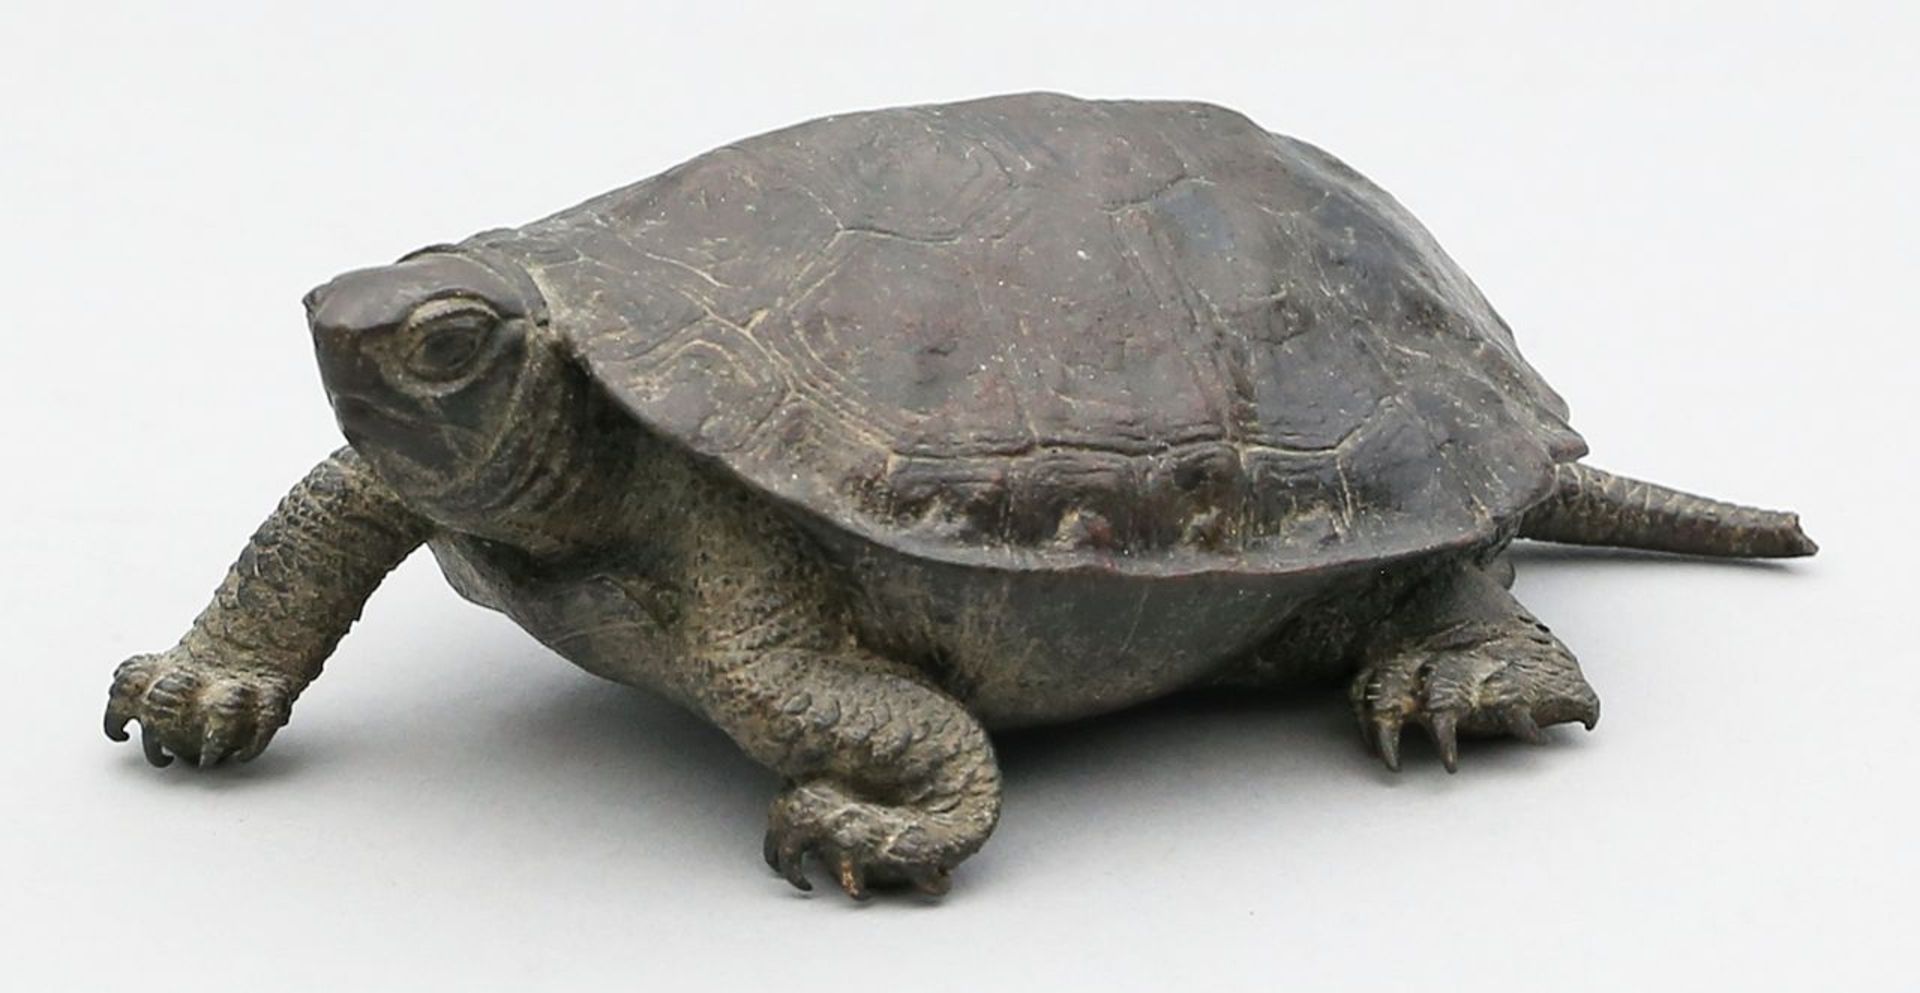 Ryuki, Nogami (1865 Japan 1932) Skulptur einer Schildkröte. Naturalistische Ausführung in dunkel